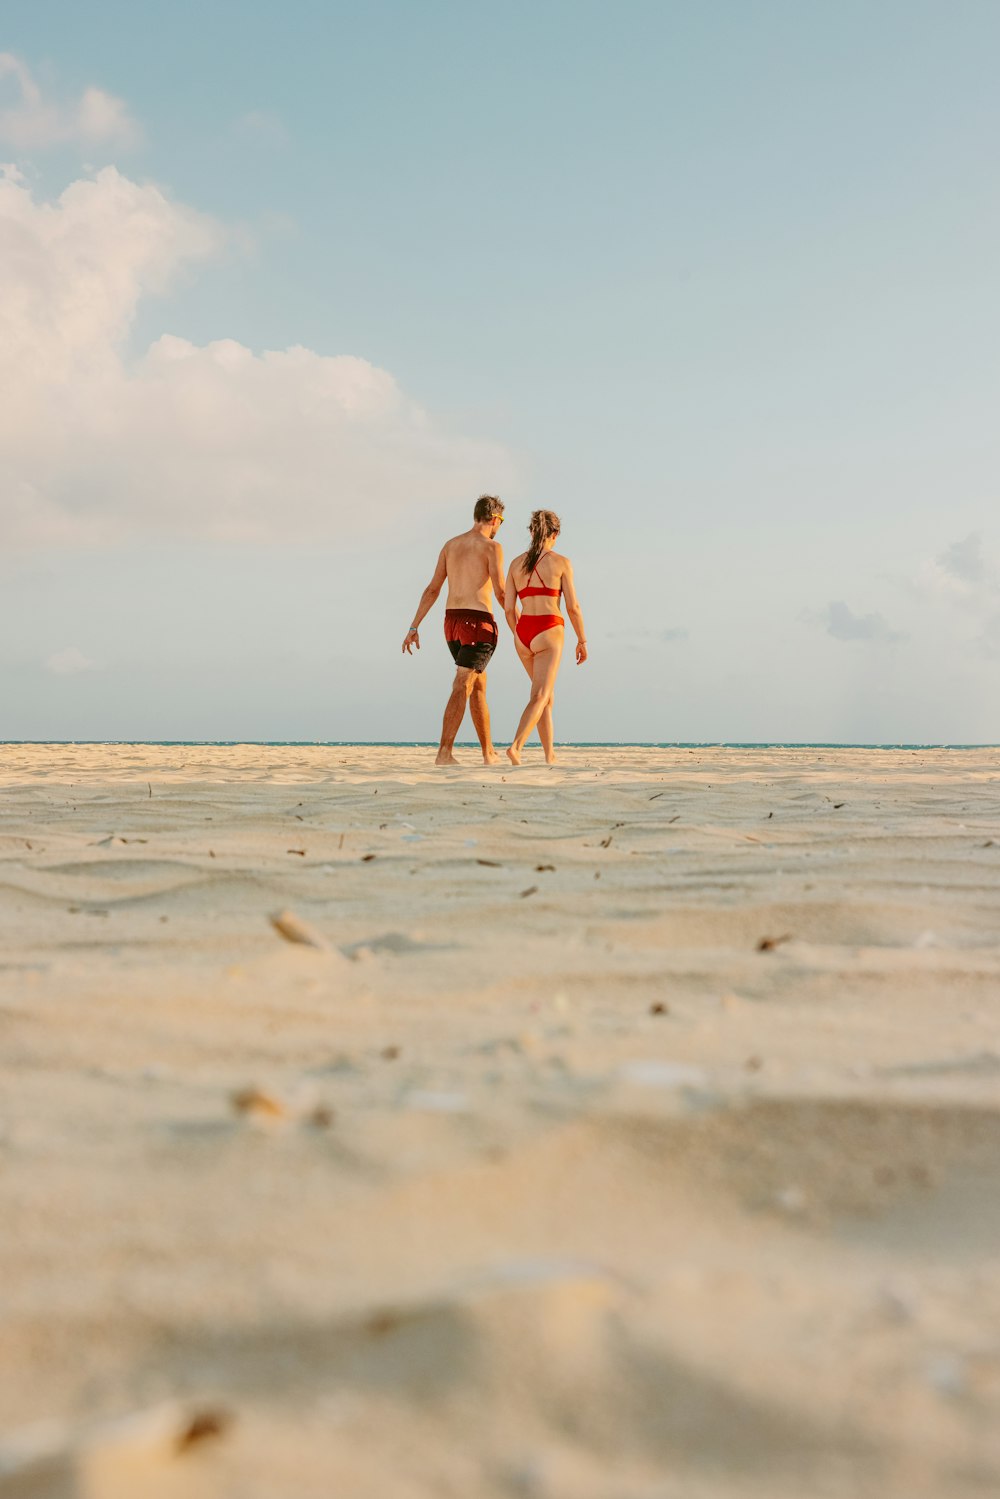 2 women walking on beach during daytime